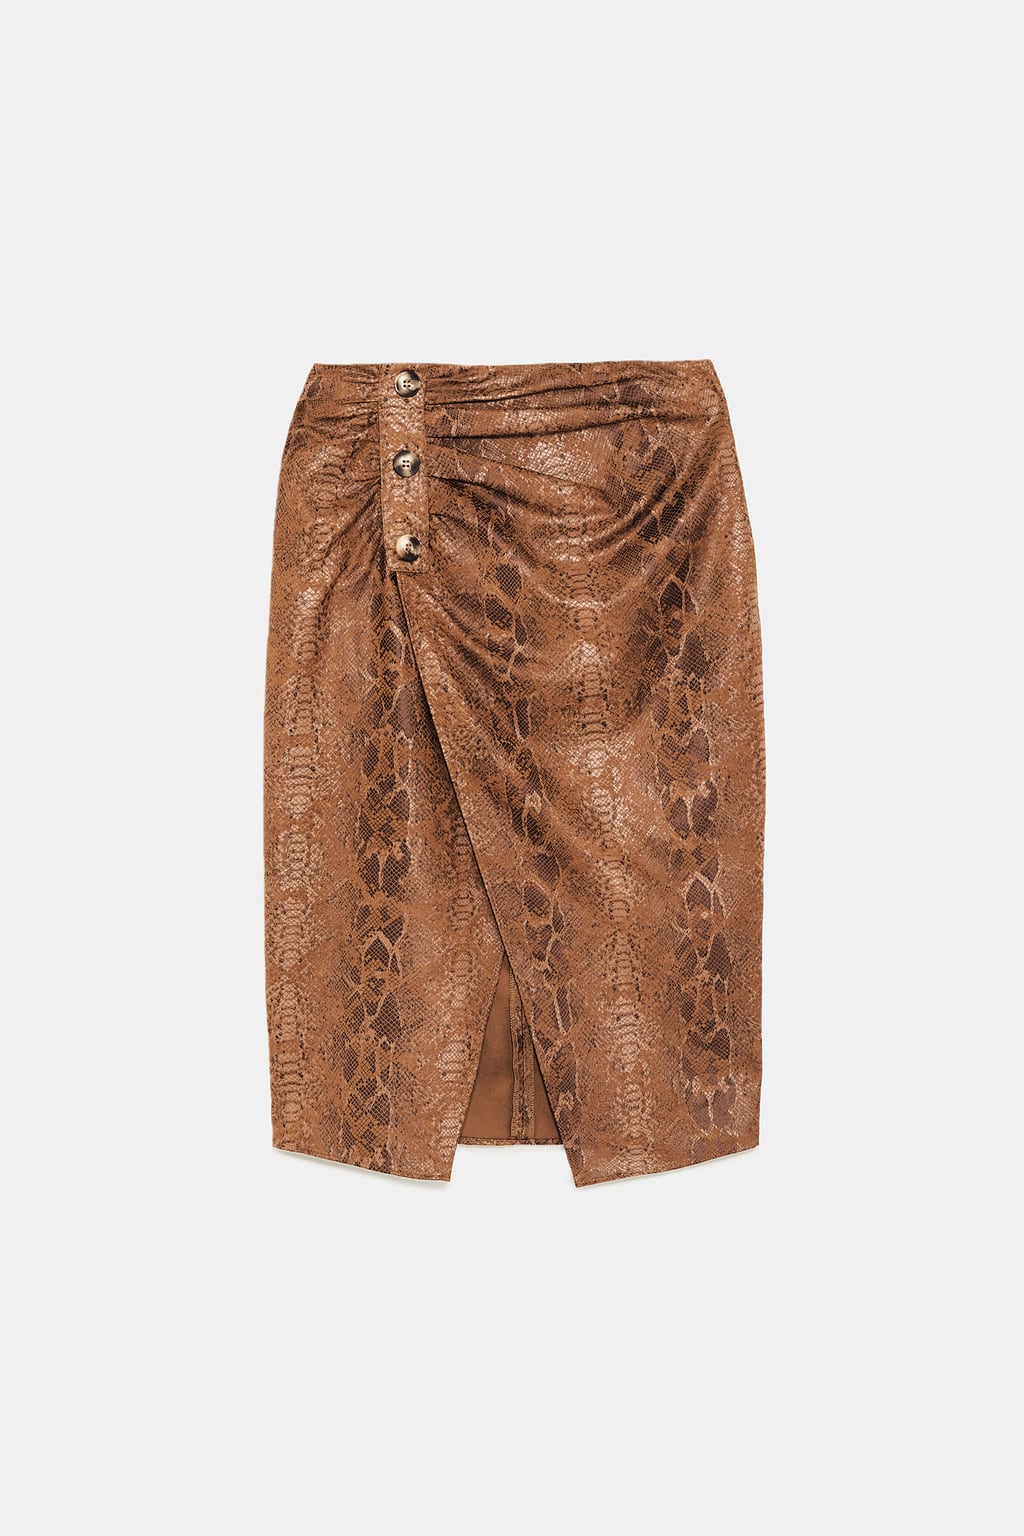 snakeskin skirt.jpg